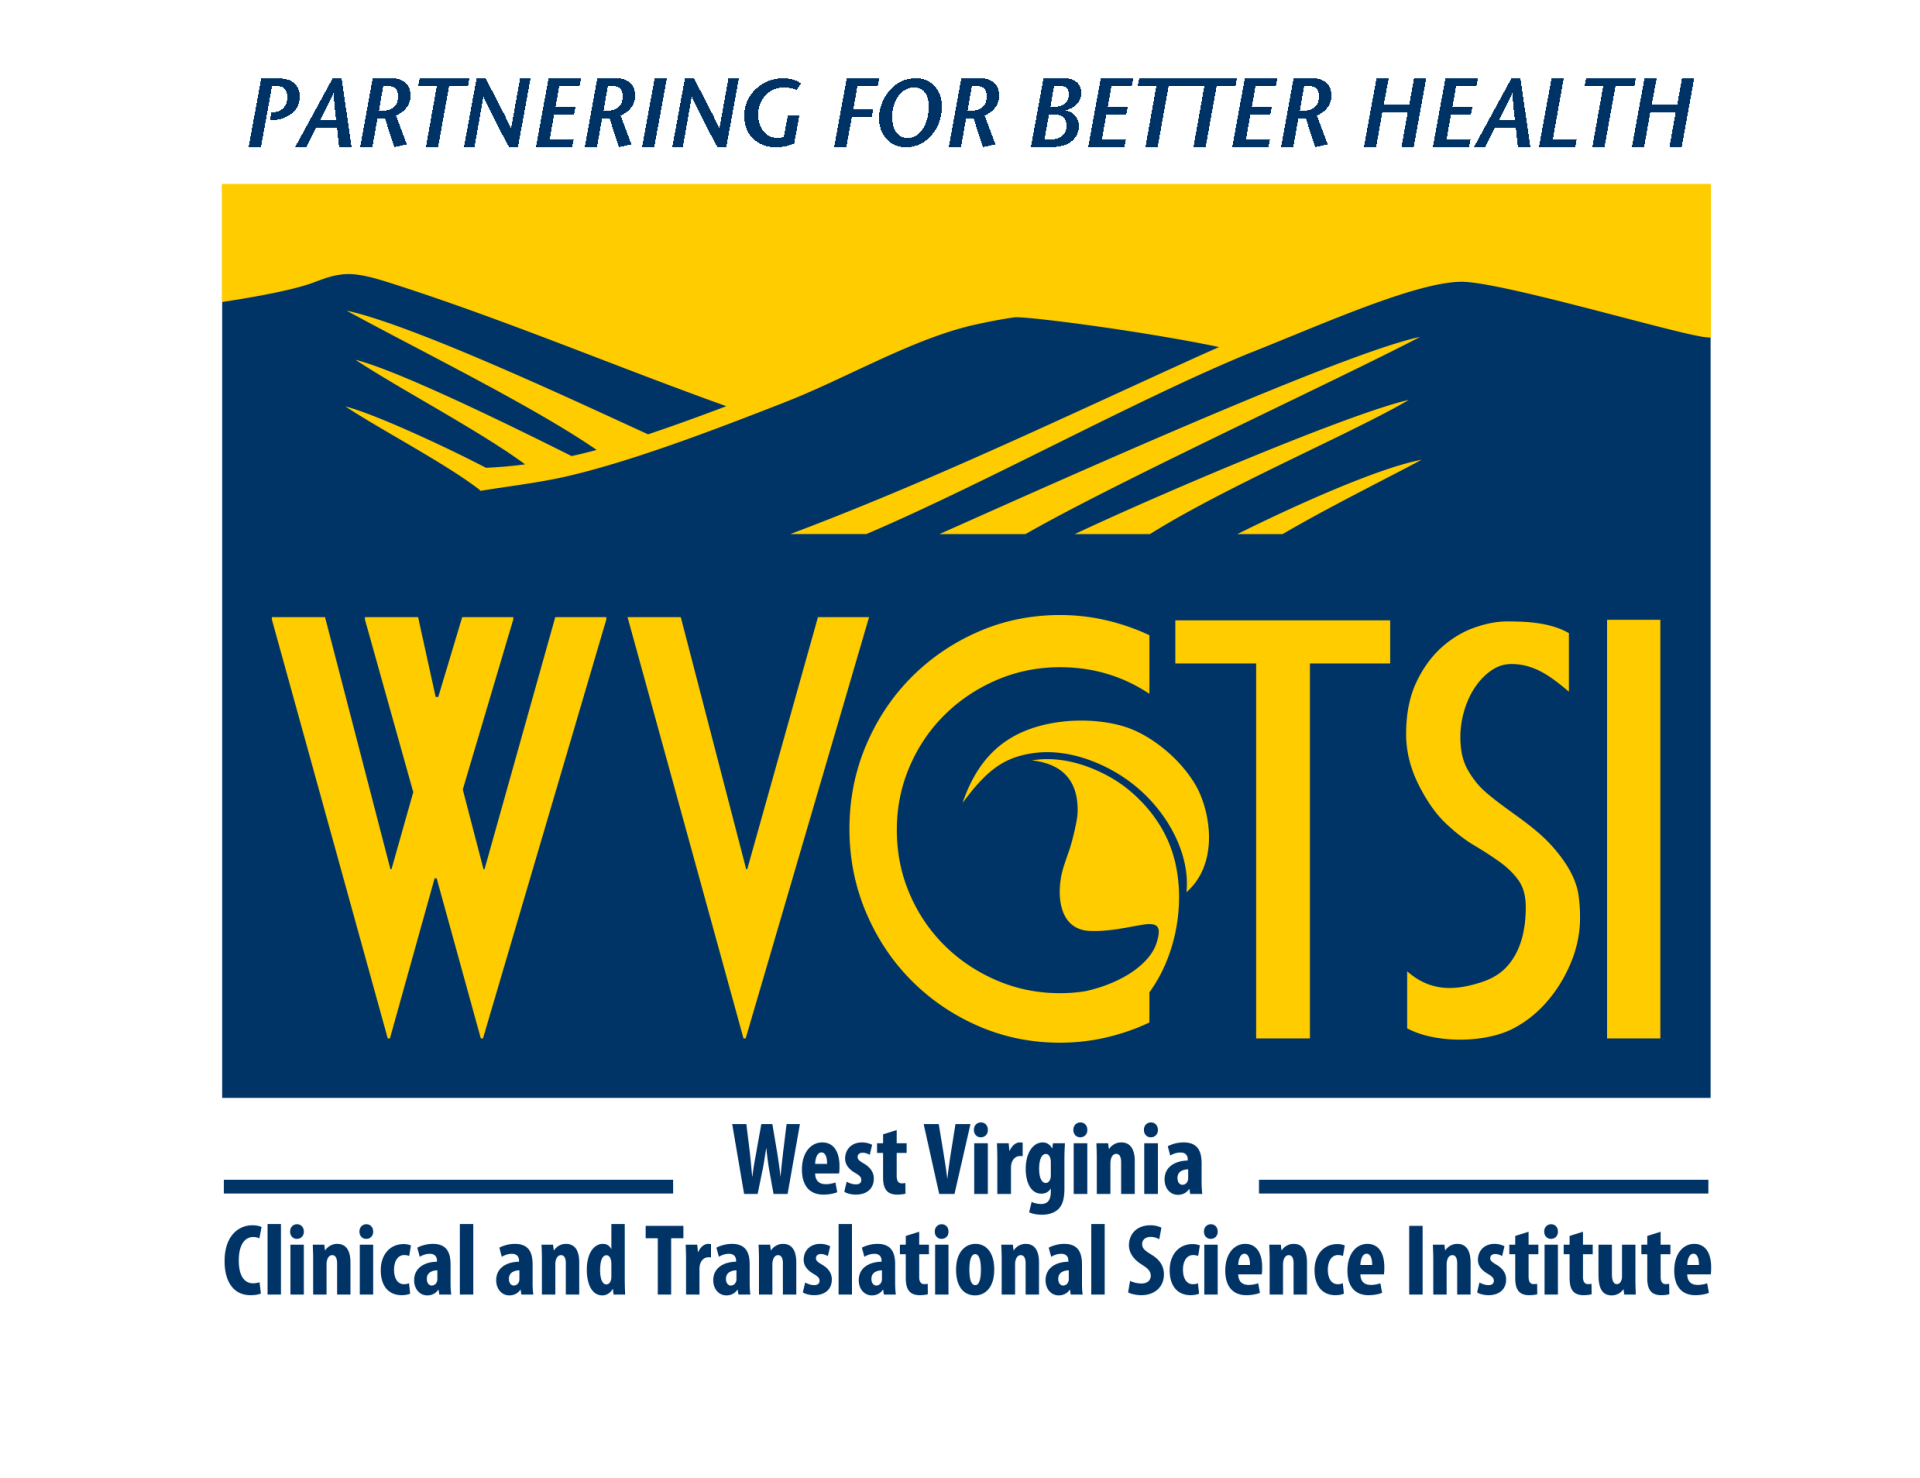 WVCTSI Logo